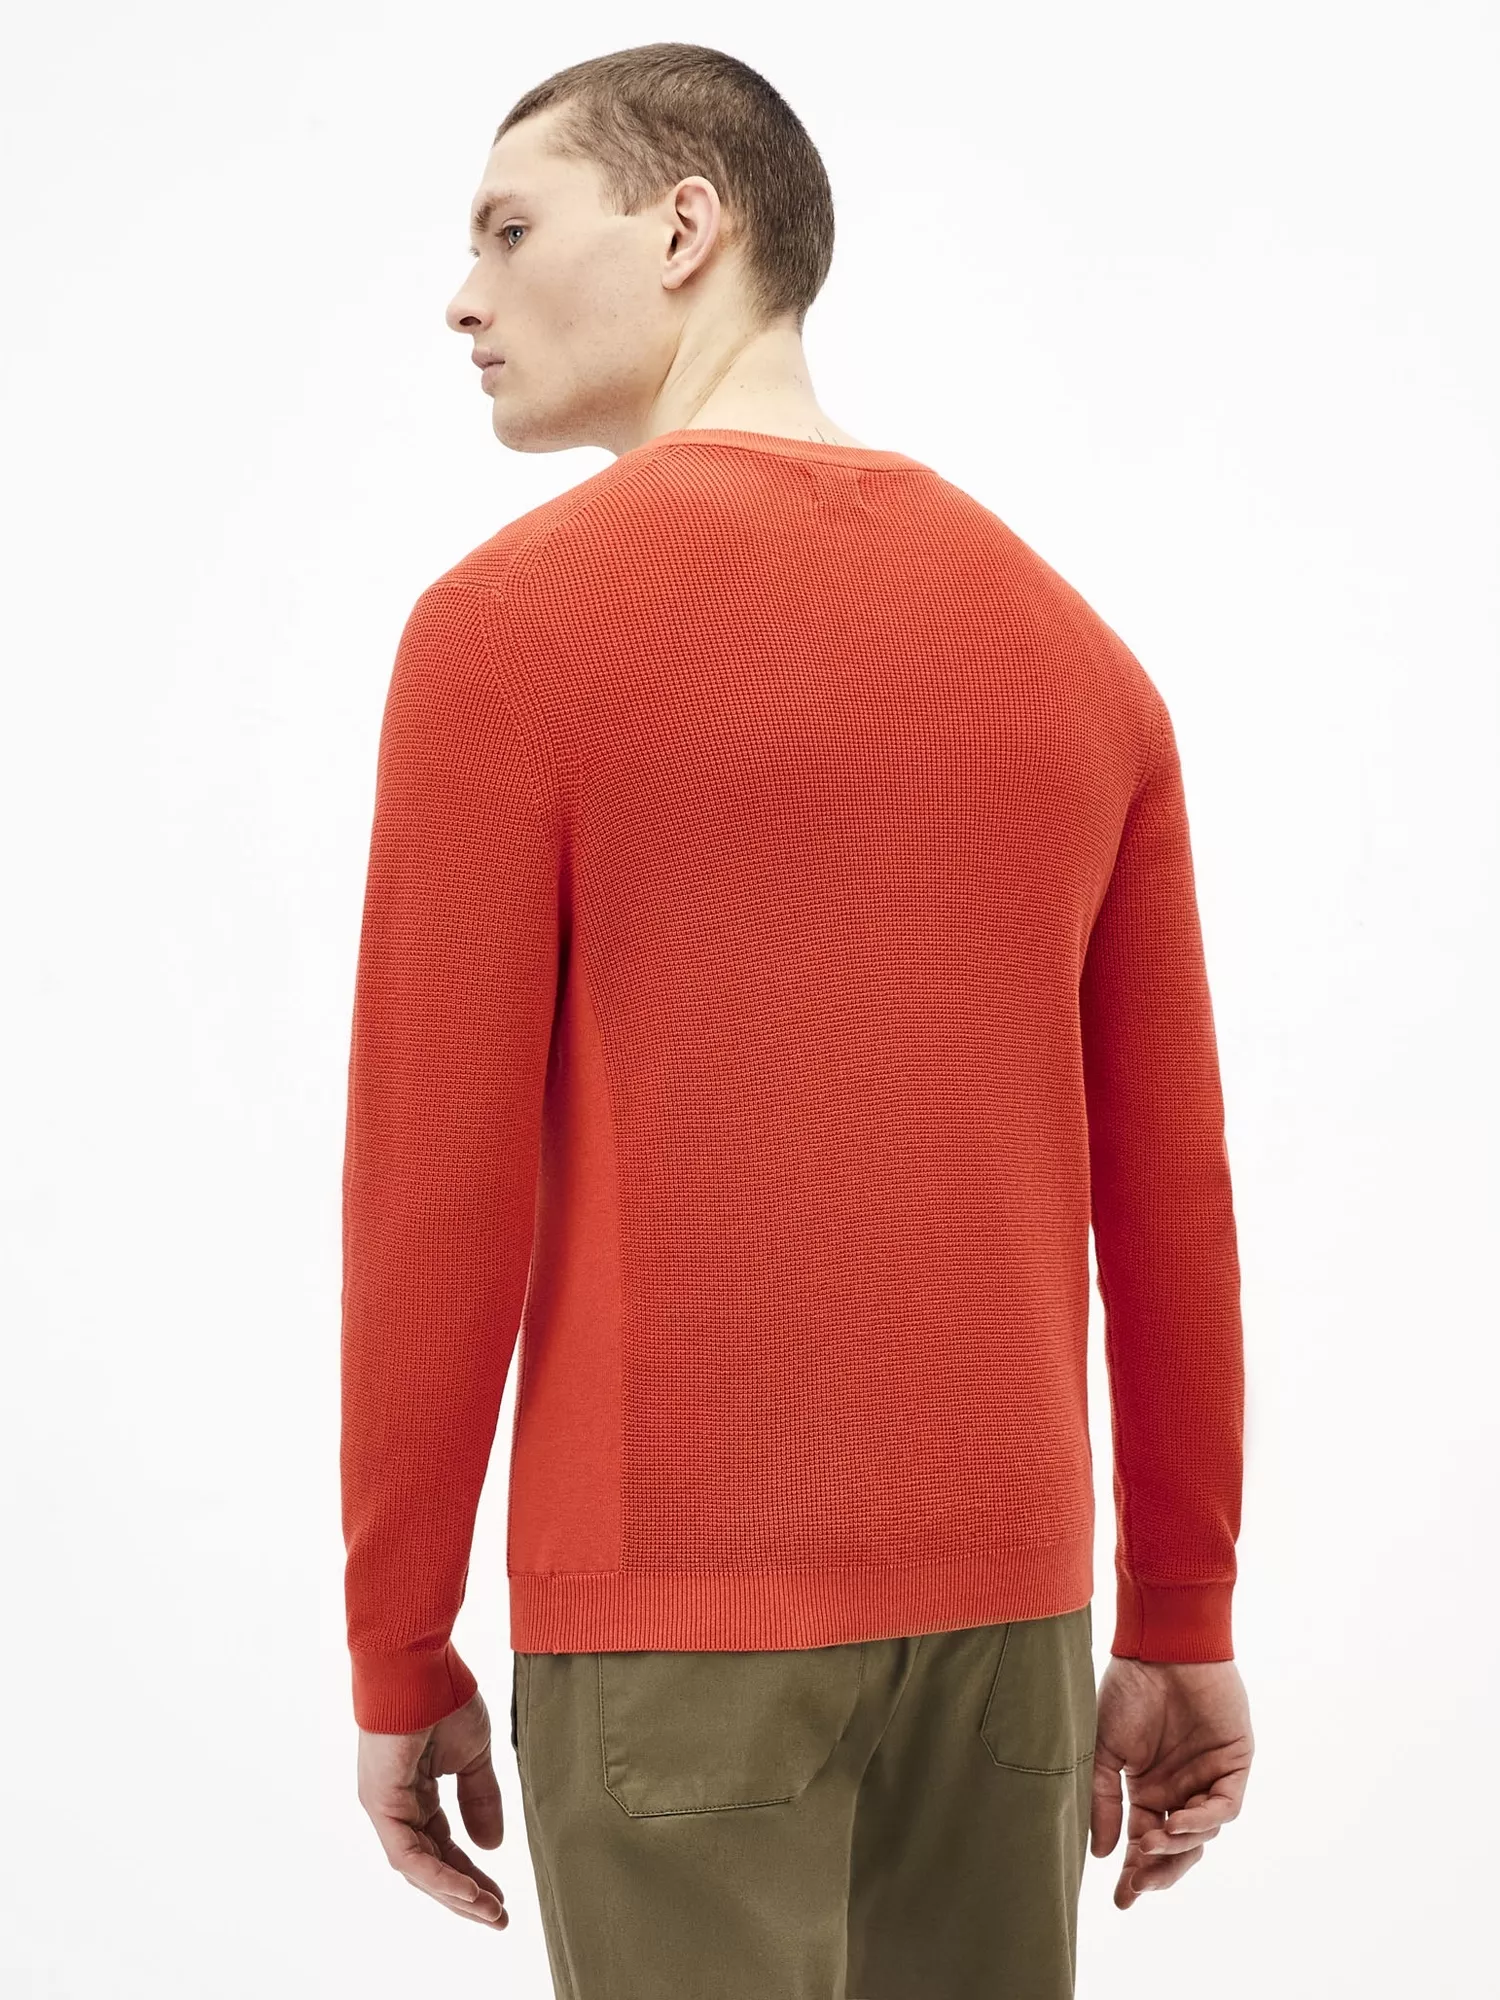 Pletený svetr Tepic s drobným vzorem (3)